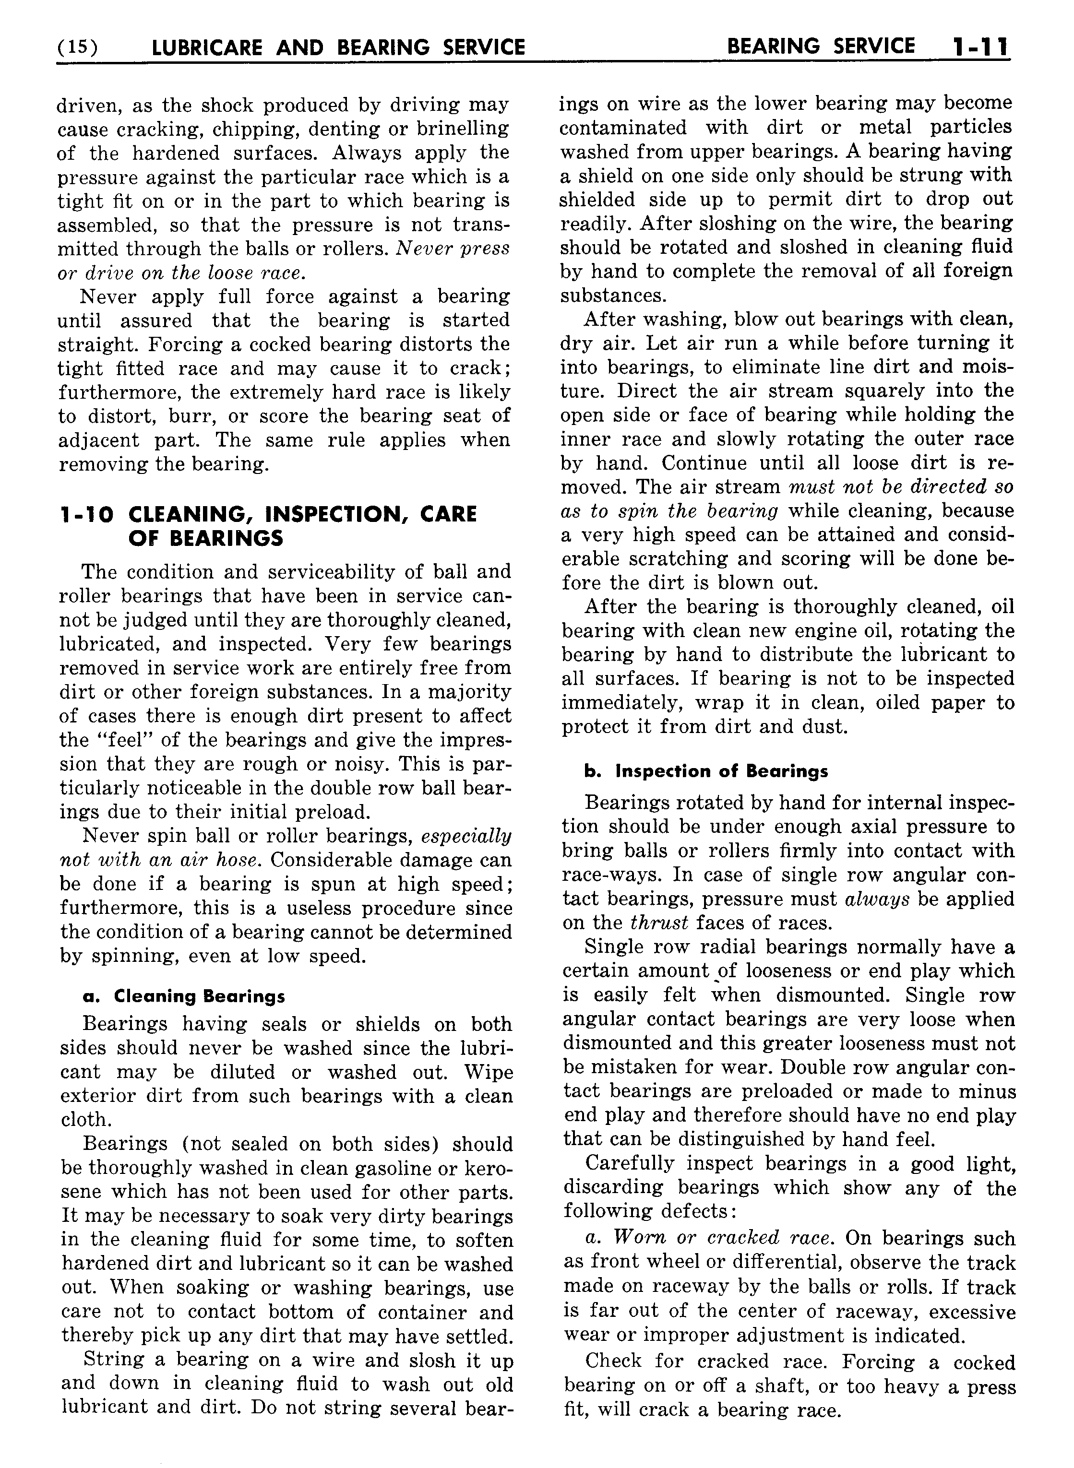 n_02 1954 Buick Shop Manual - Lubricare-011-011.jpg